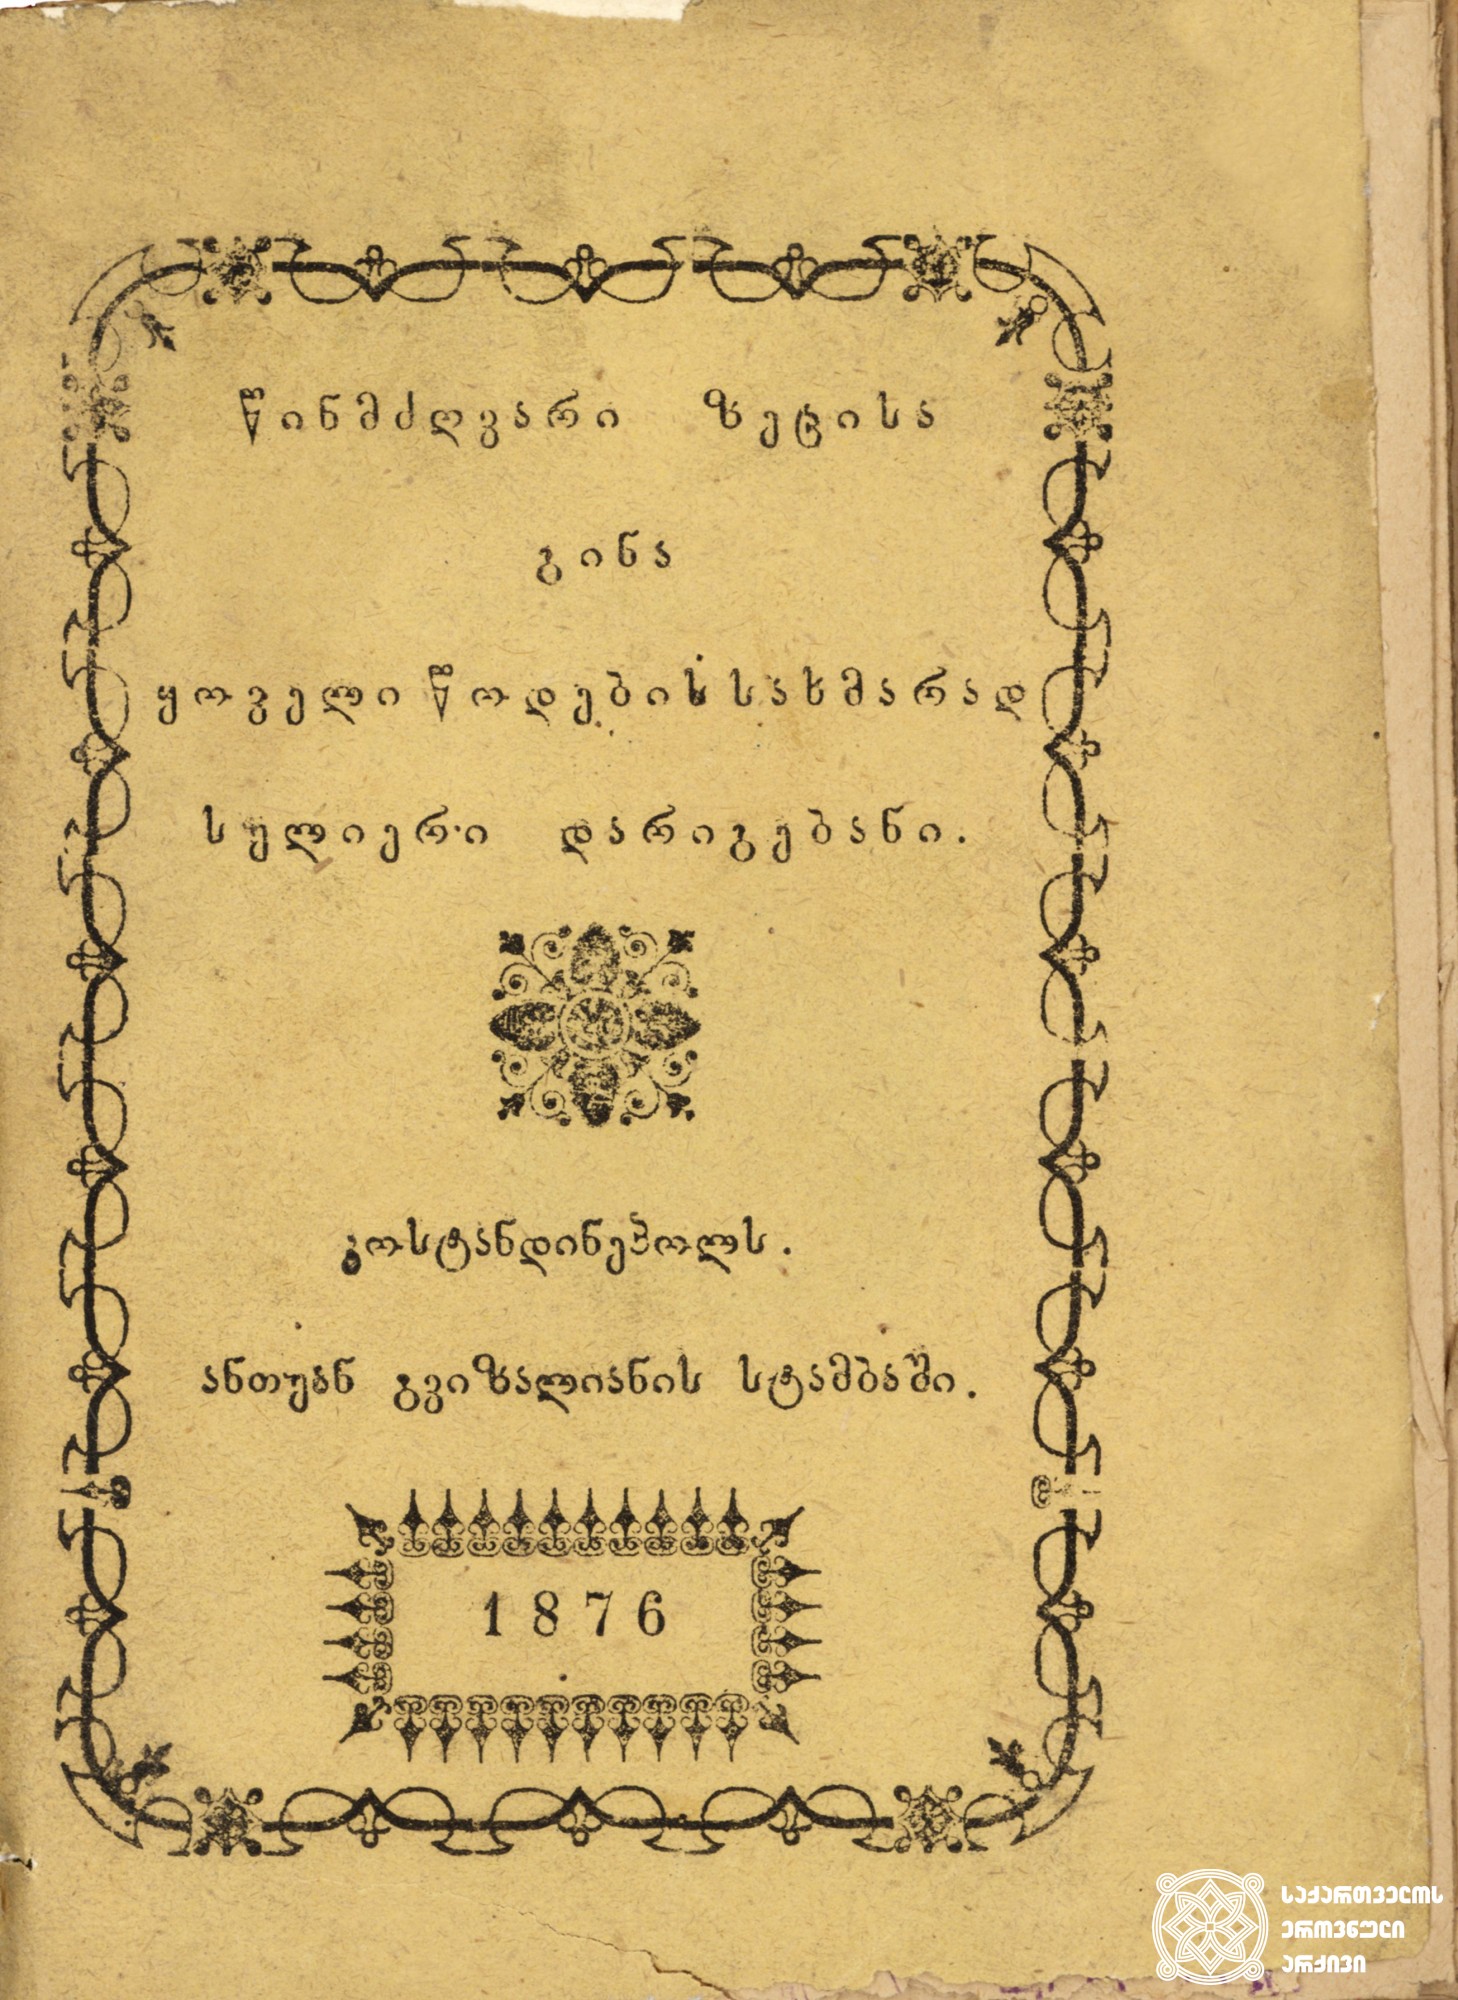 წინამძღვარი ზეცისა გინა ყოველი წოდების სახმარად სულიერი დარიგებანი <br>
კონსტანტინეპოლი, 1876. ანთუან გვიზალიანის სტამბა <br>
Spiritual Admonitions <br>
Constantinople, 1876. Printing House of Antuan Gvizaliani